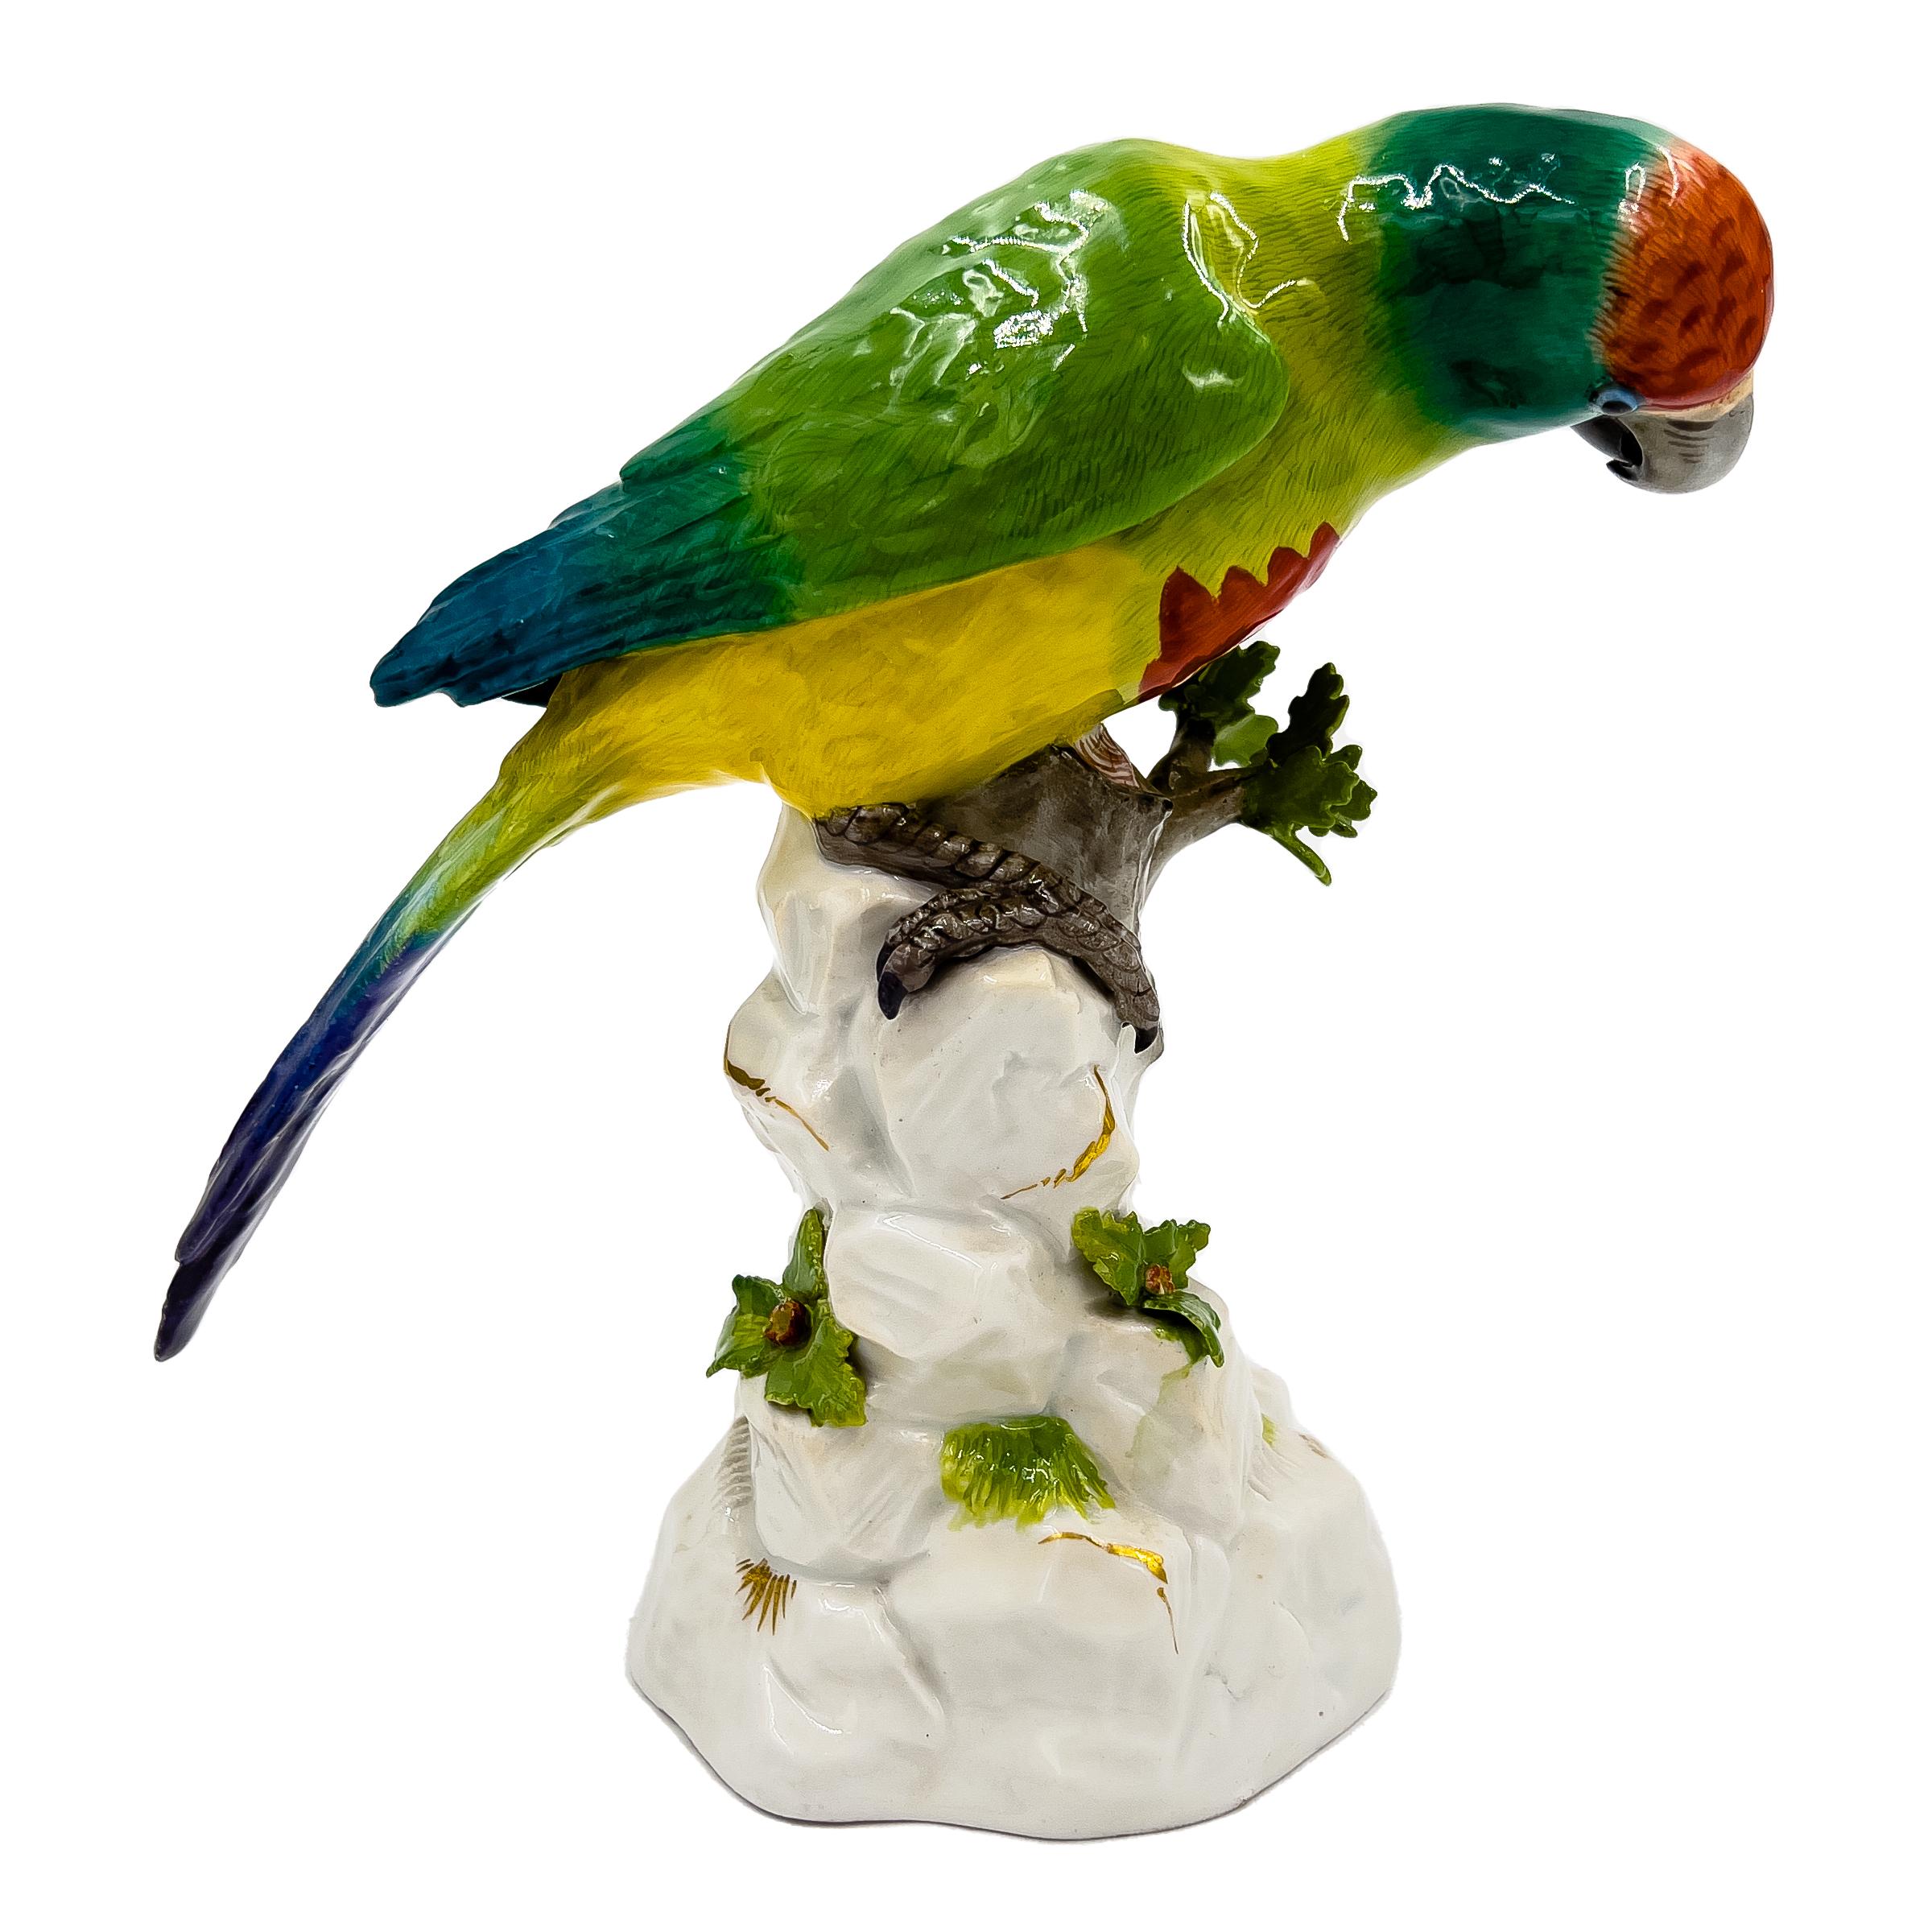 Meissener Papagei auf einem Baum aus dem 19. Jahrhundert, fachmännisch gearbeitet mit realistischen Details. Dieses mehrfarbige Meisterwerk zeigt den Papagei auf einem Baum, der mit leuchtenden Blumen und Blättern geschmückt ist. Am Sockel prangt